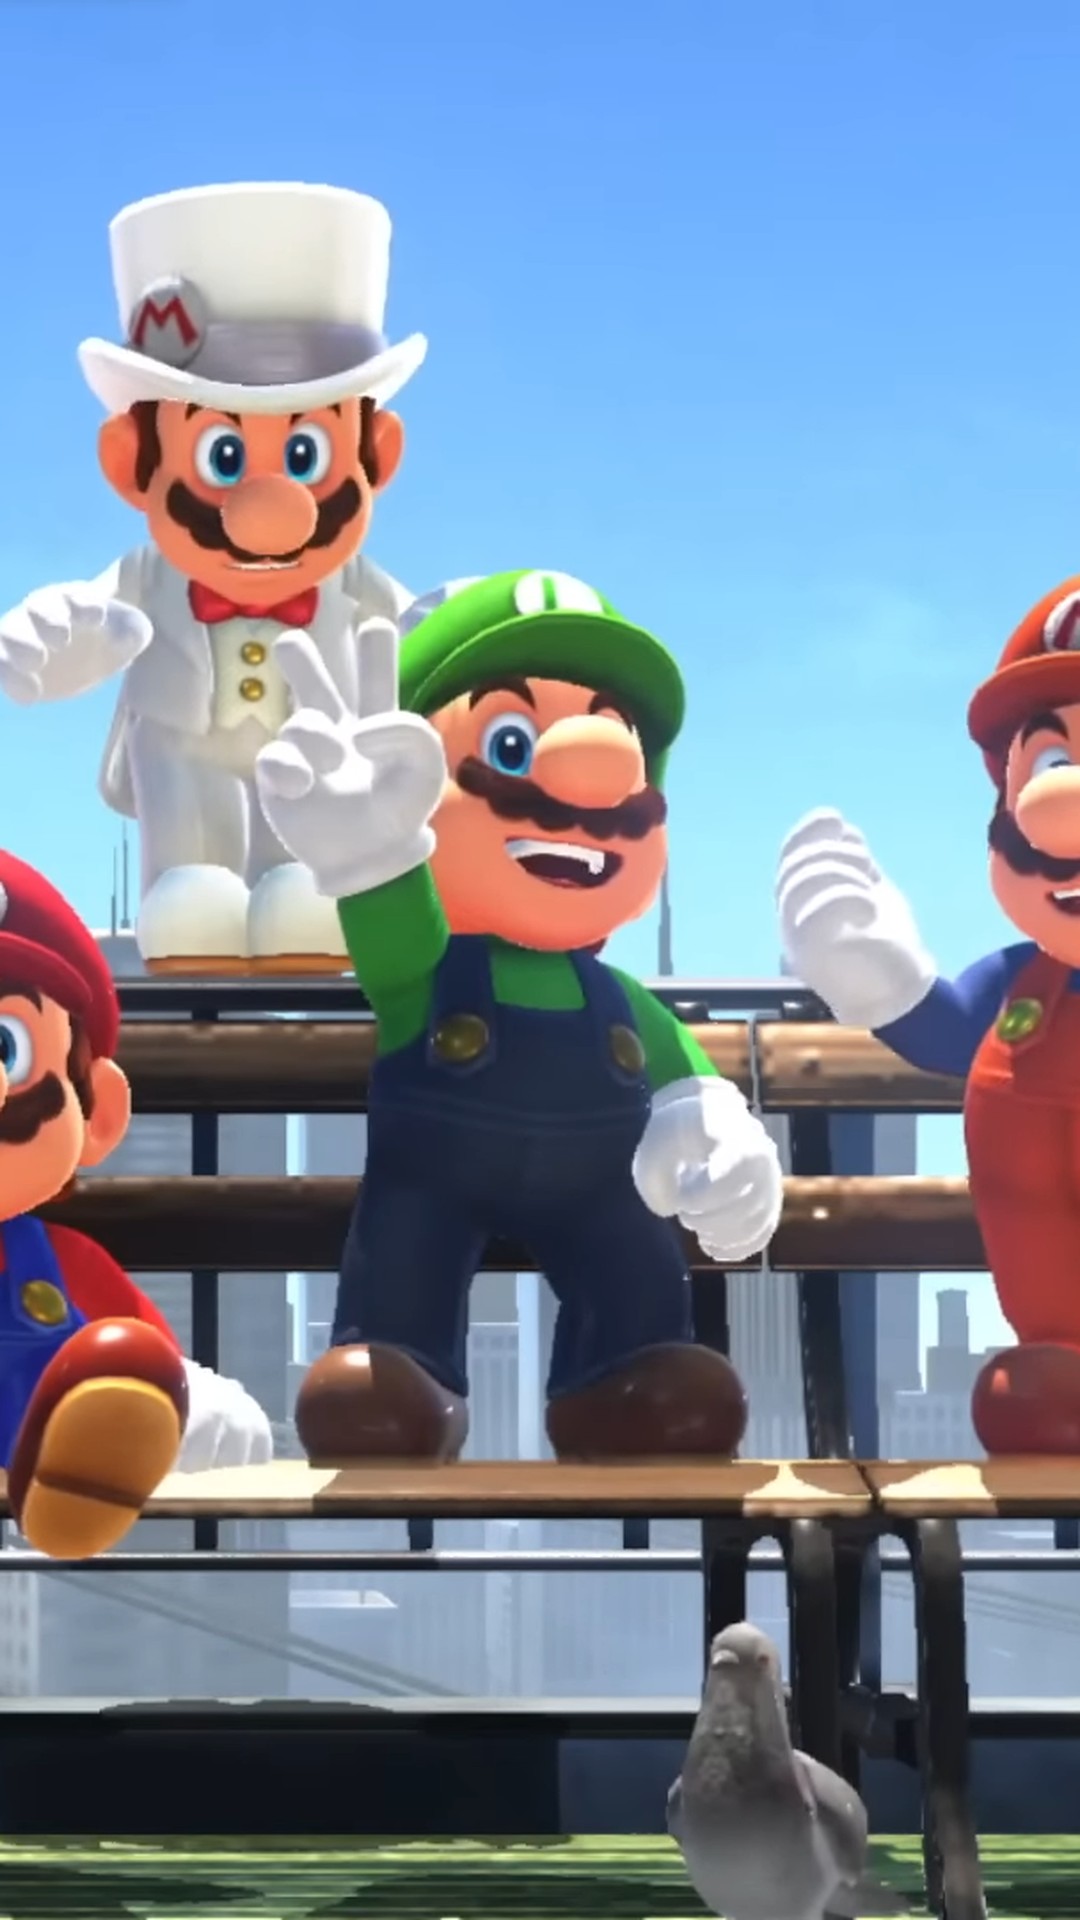 Já está disponível uma atualização gratuita para Super Mario Odyssey!, Notícias